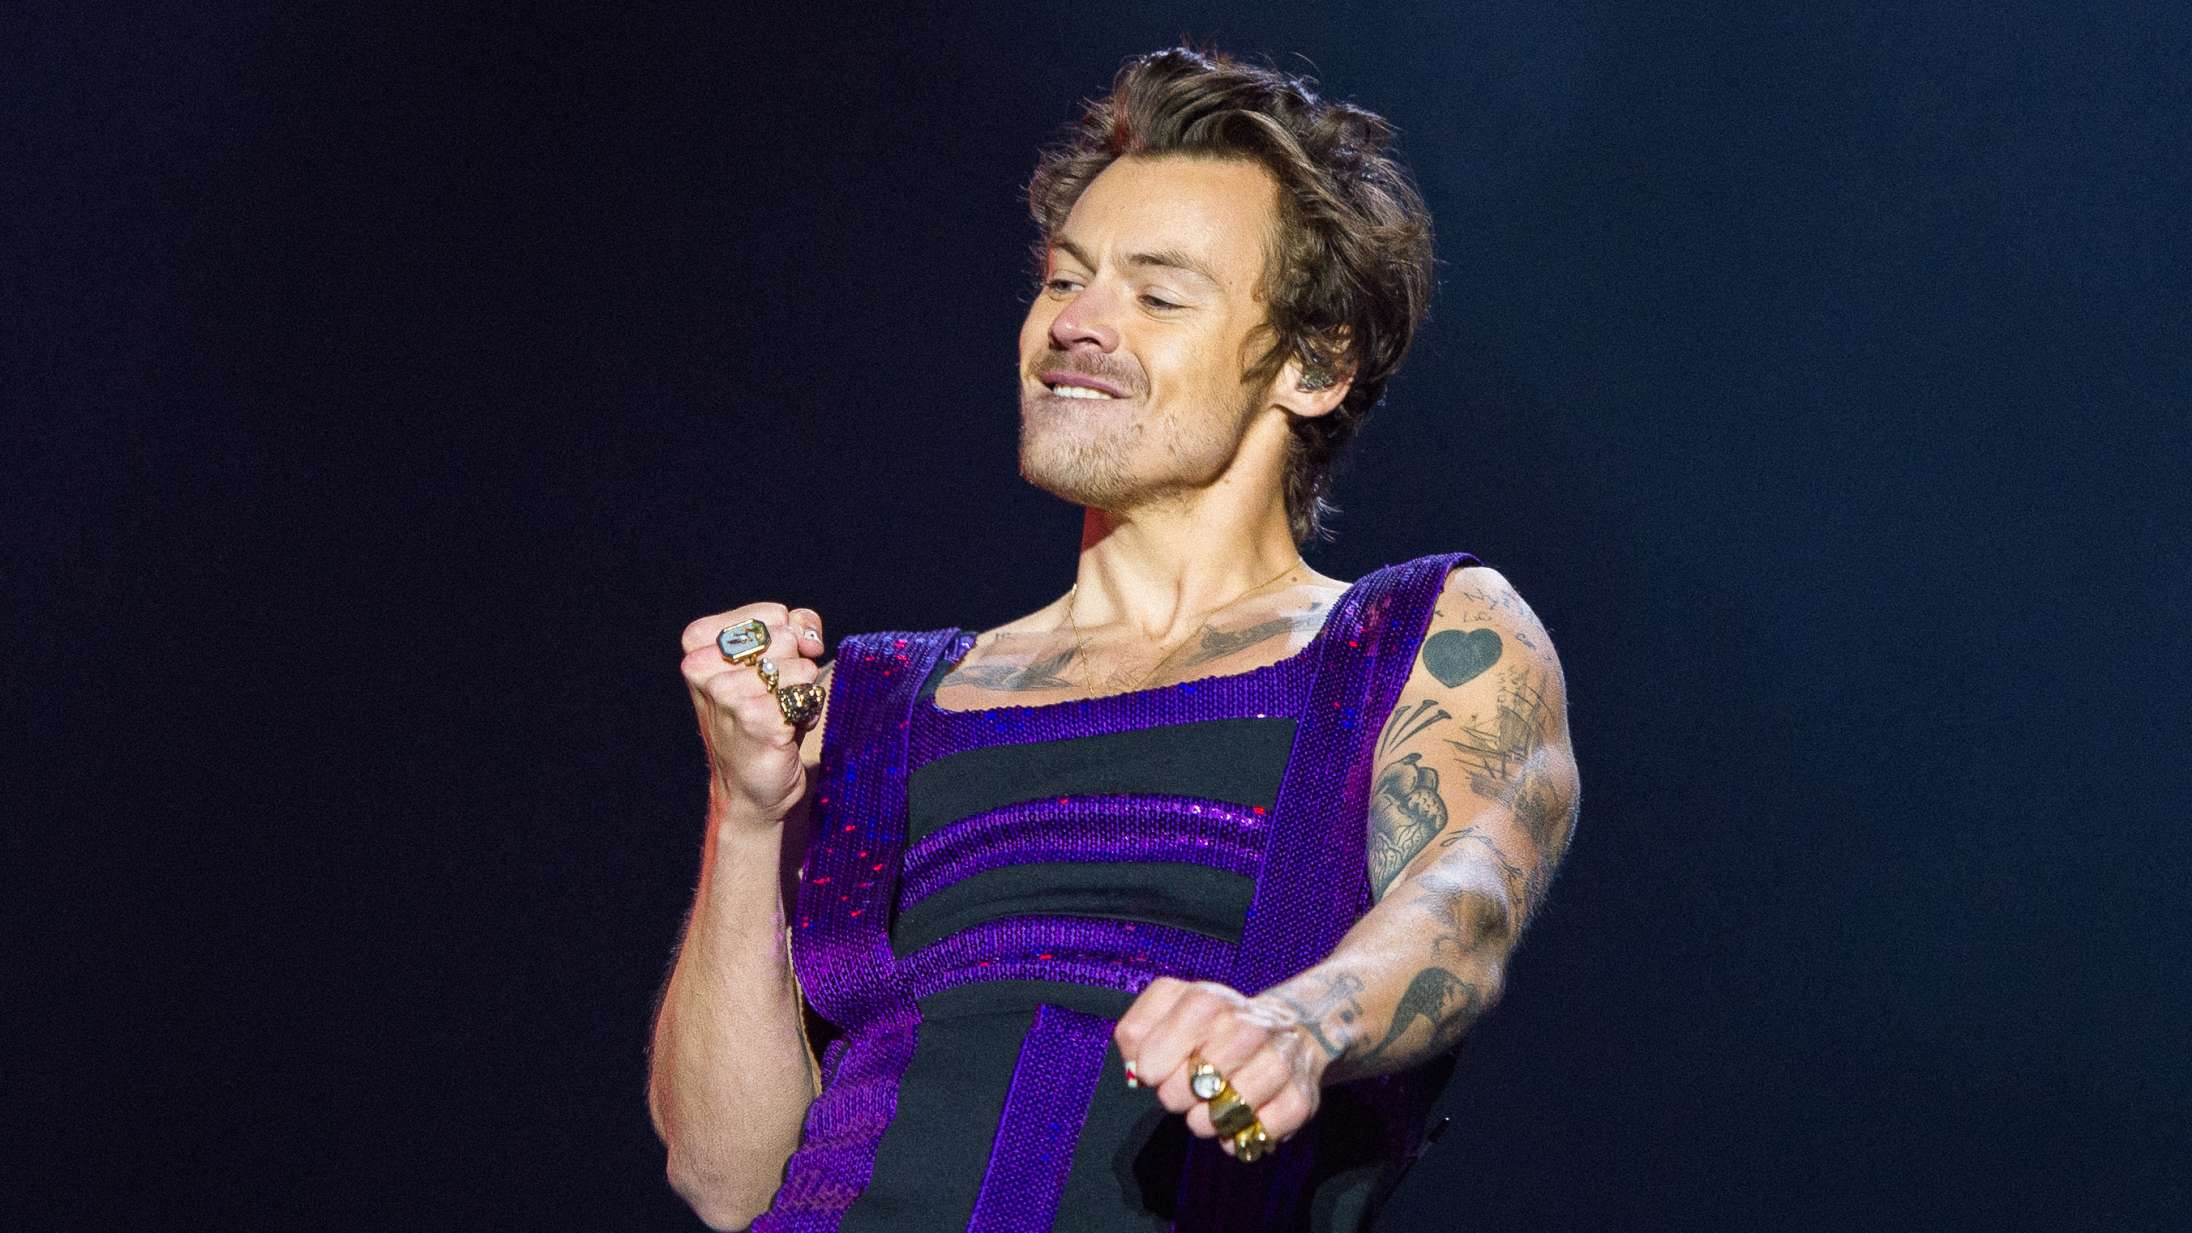 Se Harry Styles’ læderbukser revne midt under koncert: »Jeg føler, jeg bør undskylde«